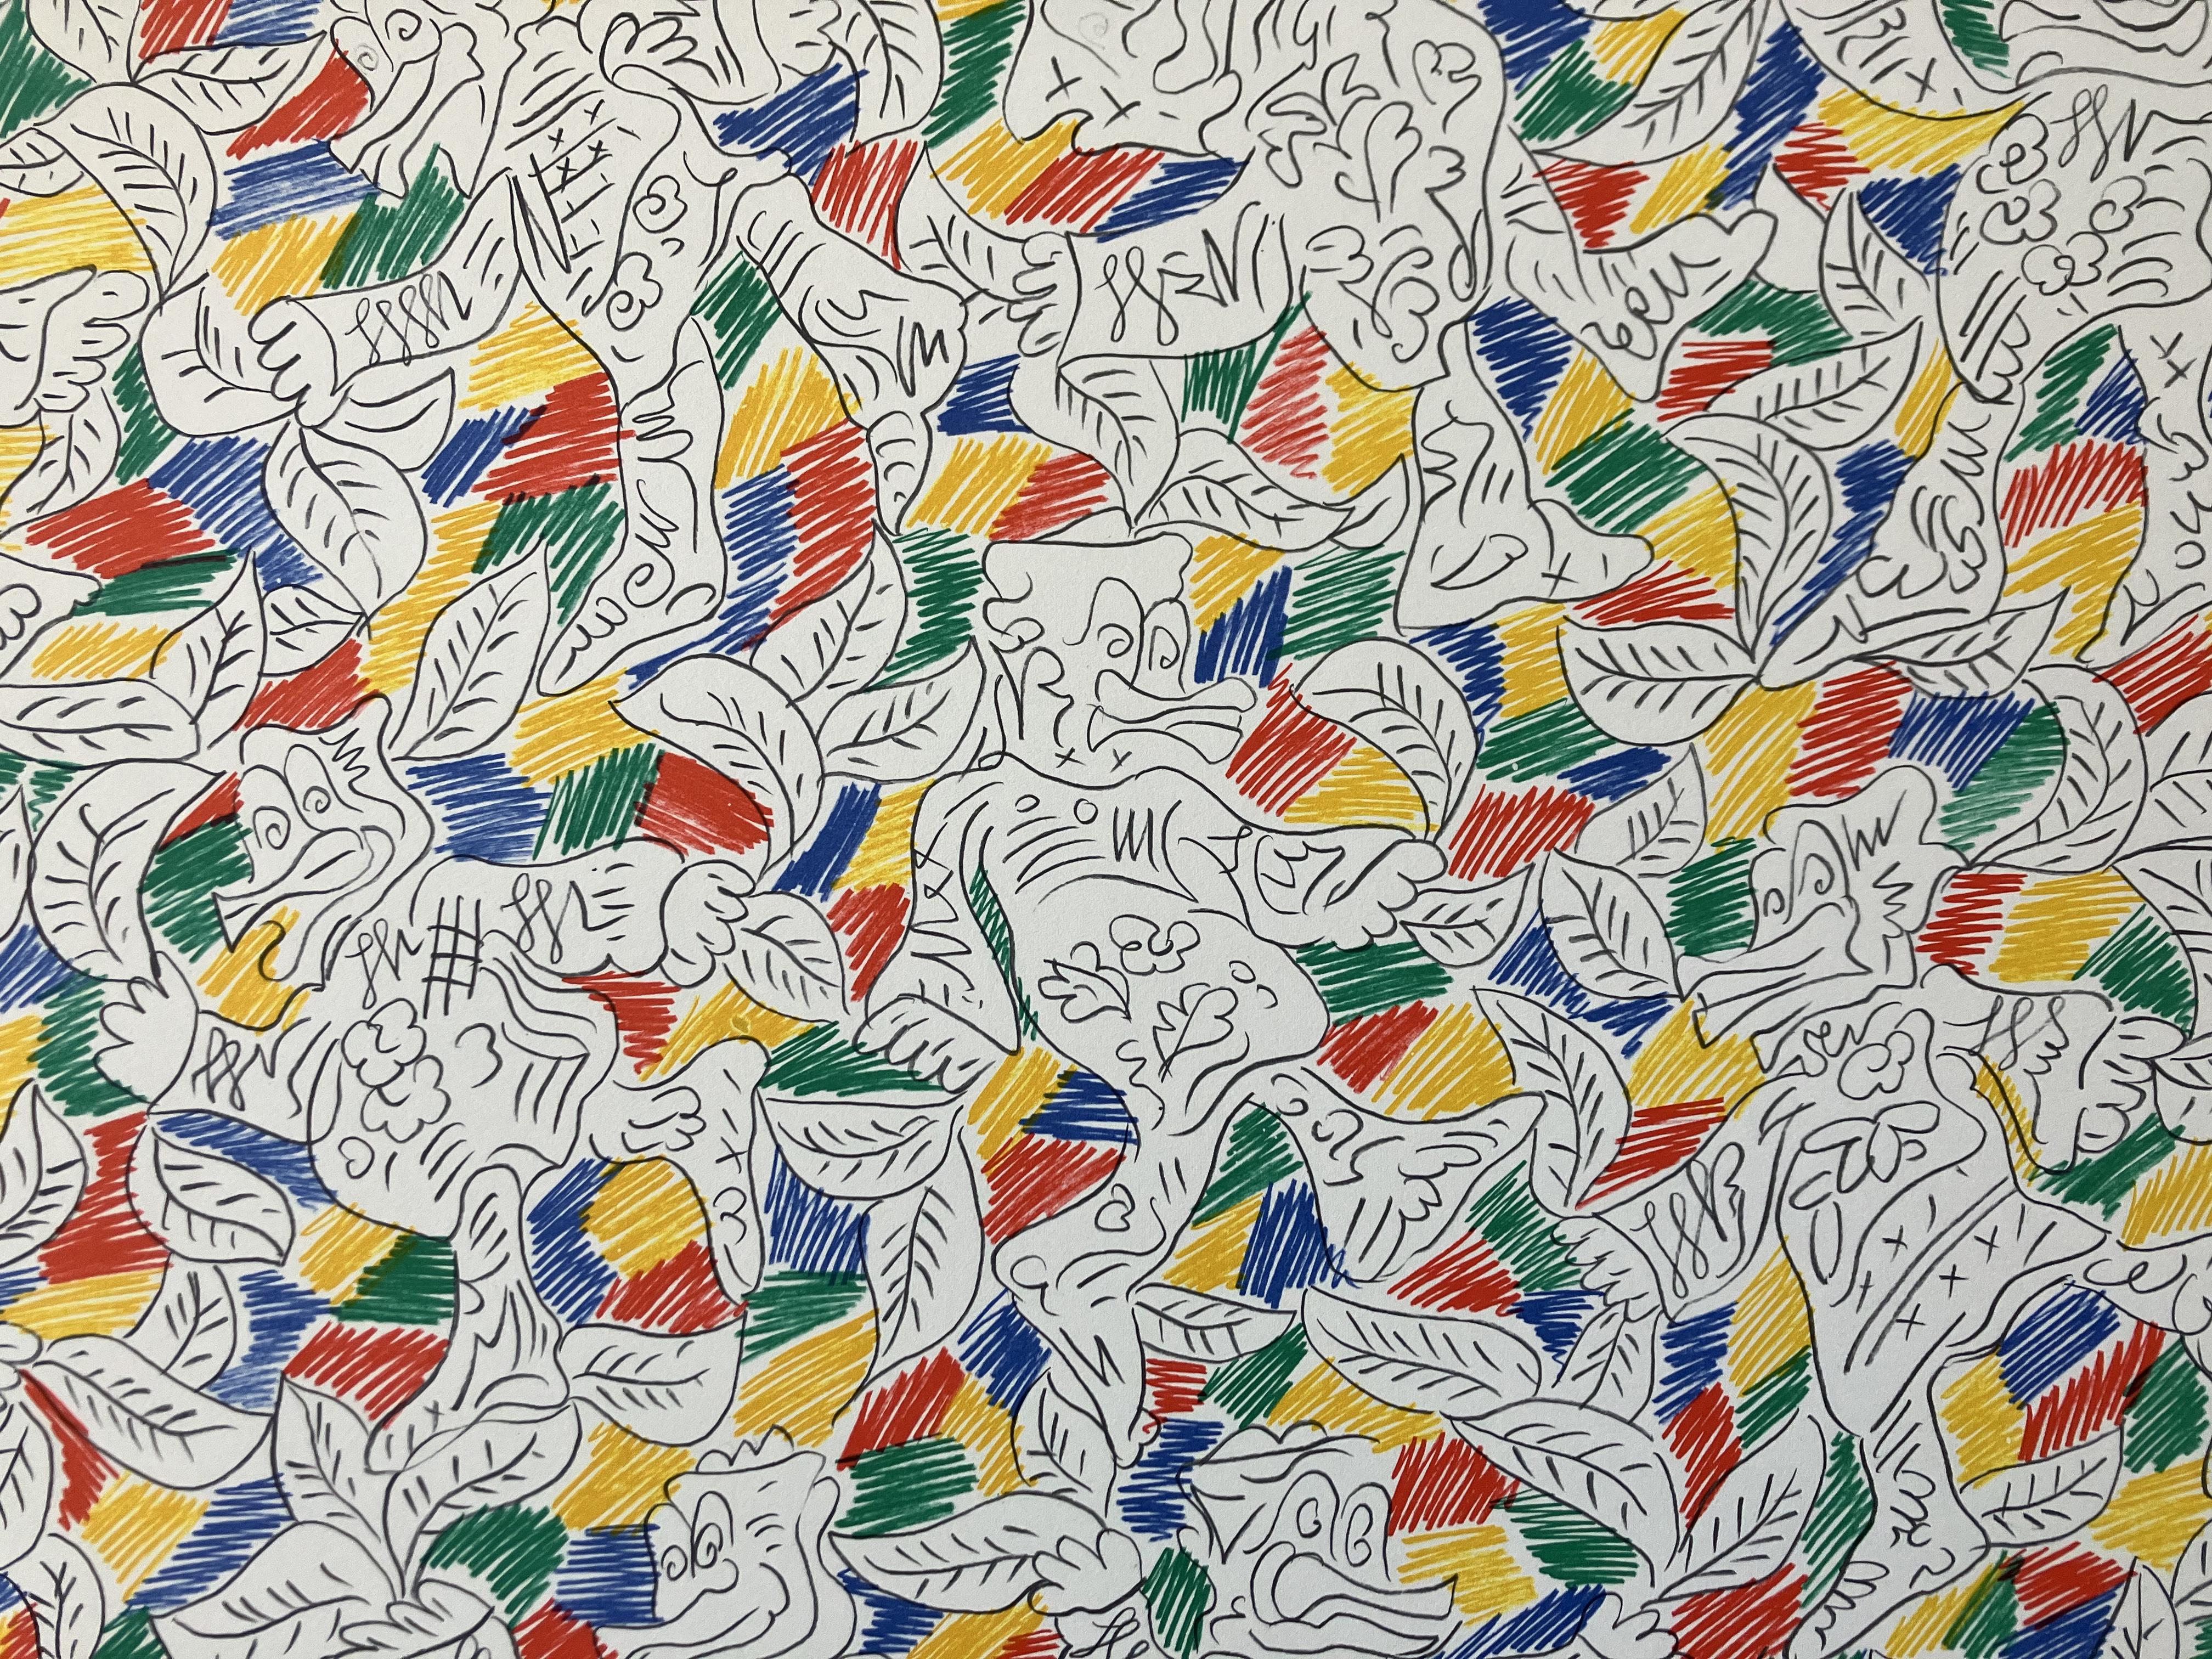 Künstler: George Chemeche - Iraker/Amerikaner (1934-2022)
Titel: Tanzende Enten in Rot, Gelb, Grün, Blau
Jahr: um 1980
Medium: Siebdruck 
Bildgröße: 19 x 27 Zoll. 
Blattgröße: 22 x 29 Zoll. 
Unterschrift: Signiert unten rechts
Auflage: 260 Diese